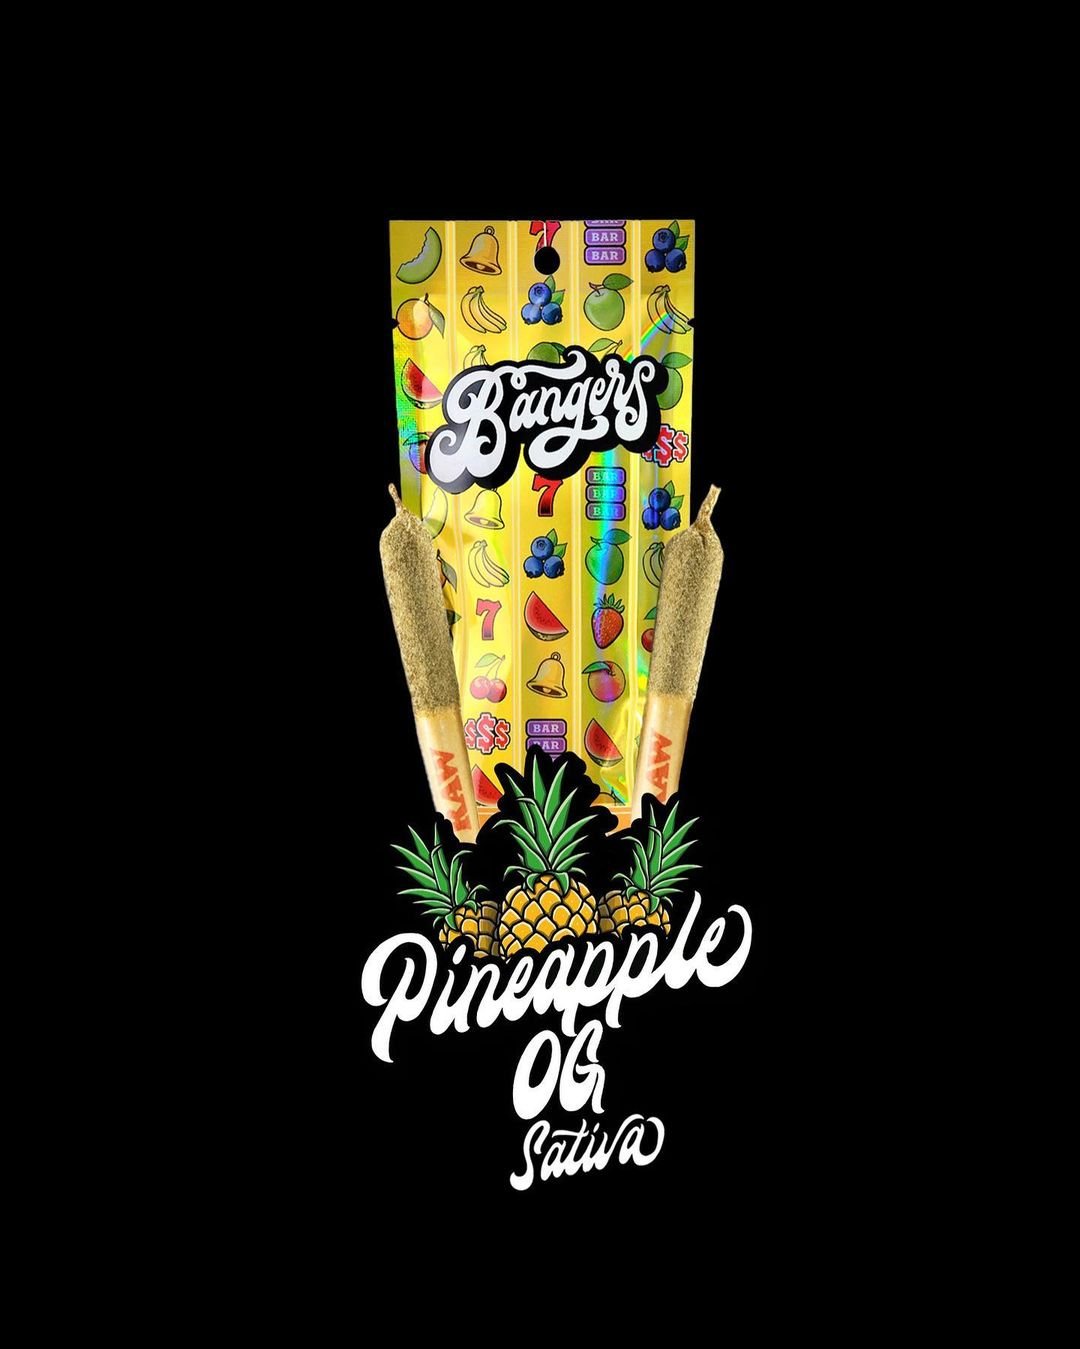 Bangers - Pineapple OG